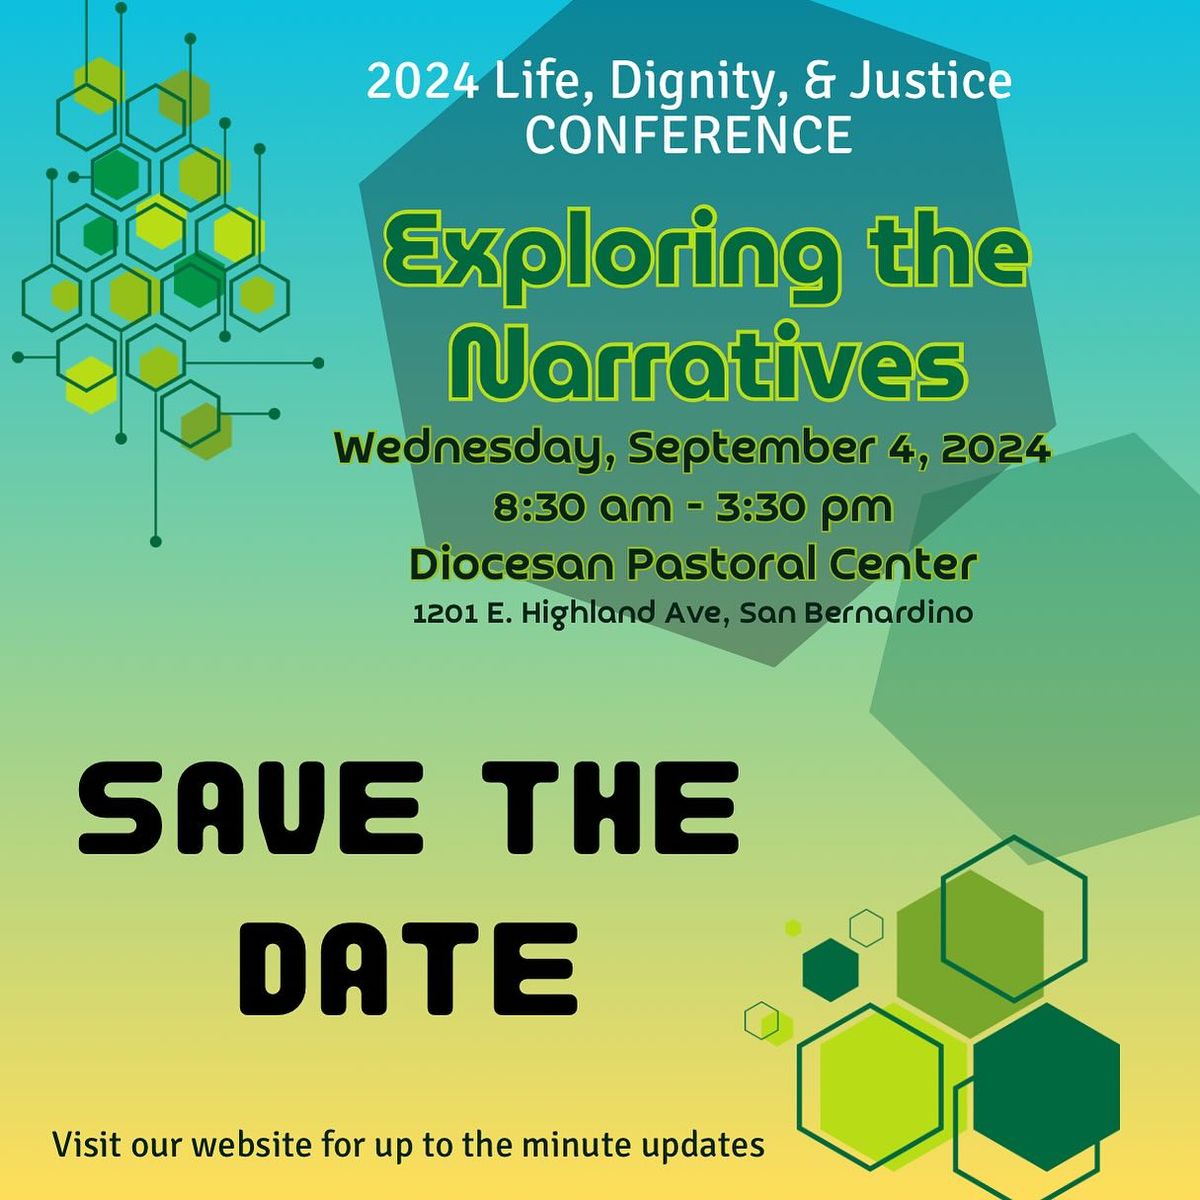 LDJ Conference 2024: Exploring the Narratives